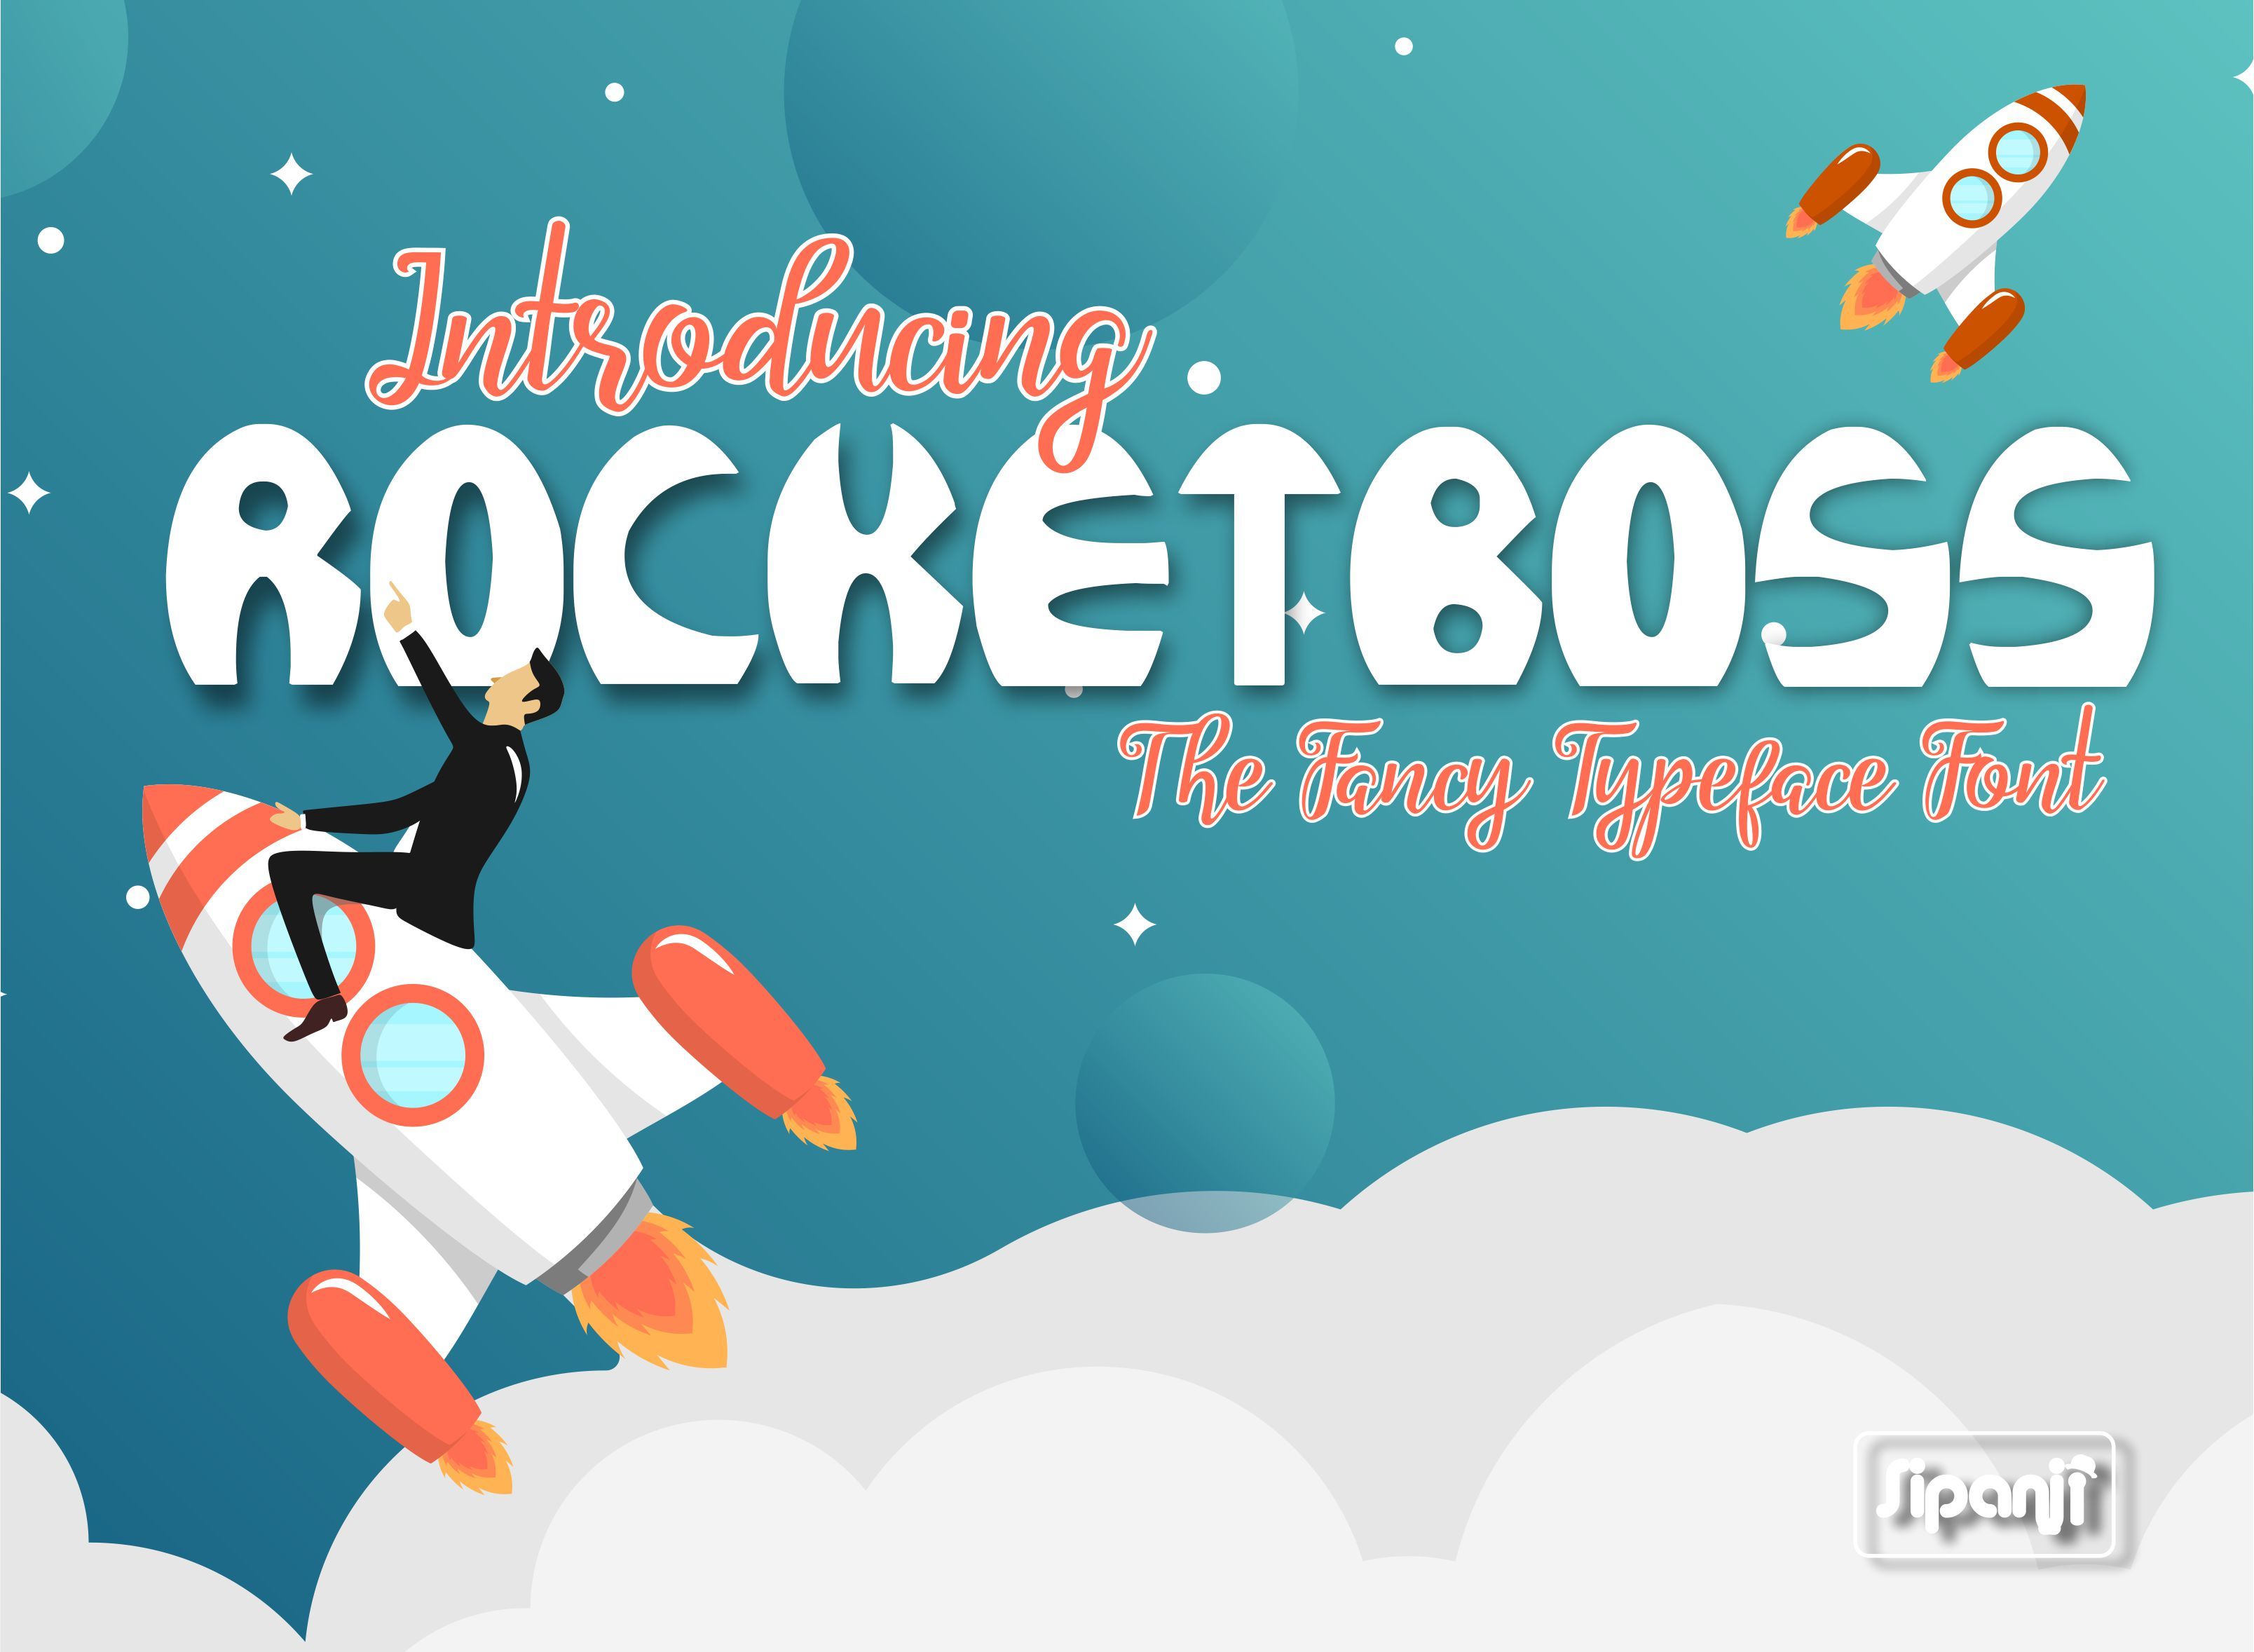 Rocketboss